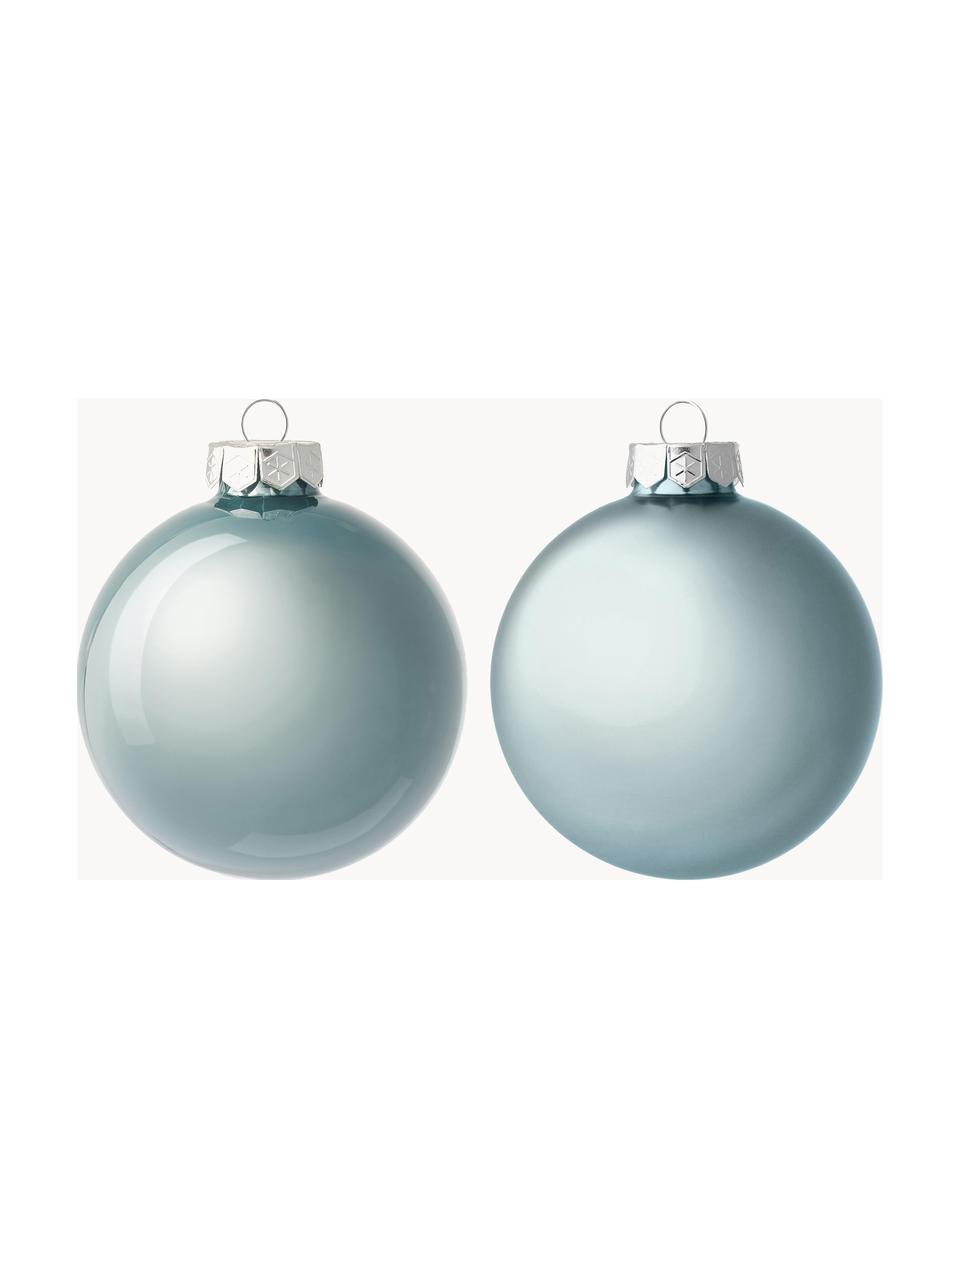 Boules de Noël Evergreen, 16 pièces, Bleu ciel, Ø 8 cm